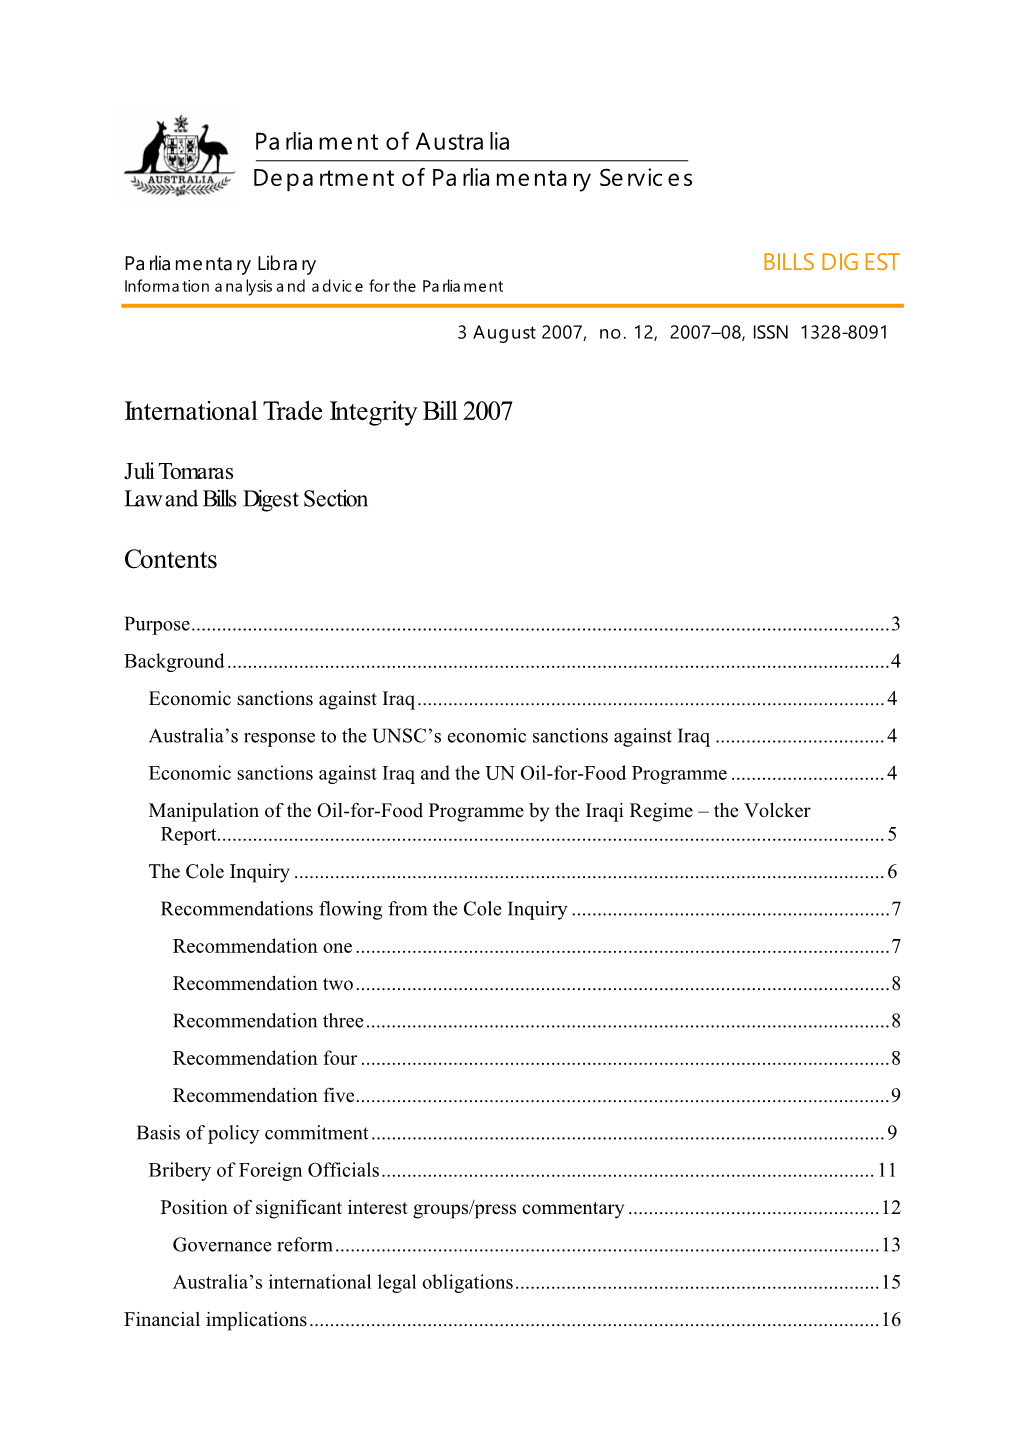 International Trade Integrity Bill 2007